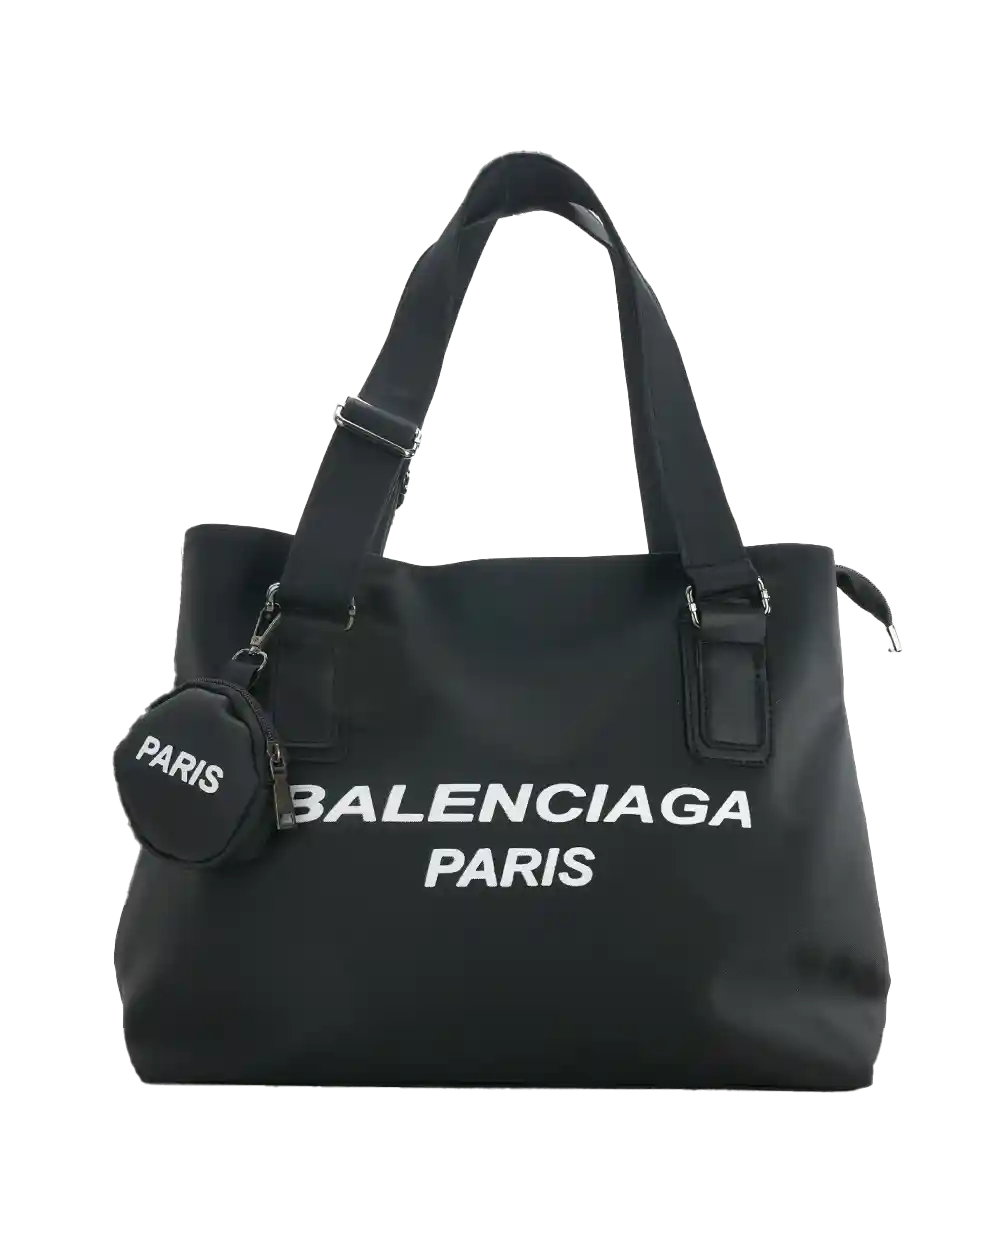 خرید کیف دستی زنانه طرح بالنسیاگا مدل 2048 مناسب خانم ها جنس برزنت رنگ مشکی به همراه ارسال رایگان و بهترین قیمت